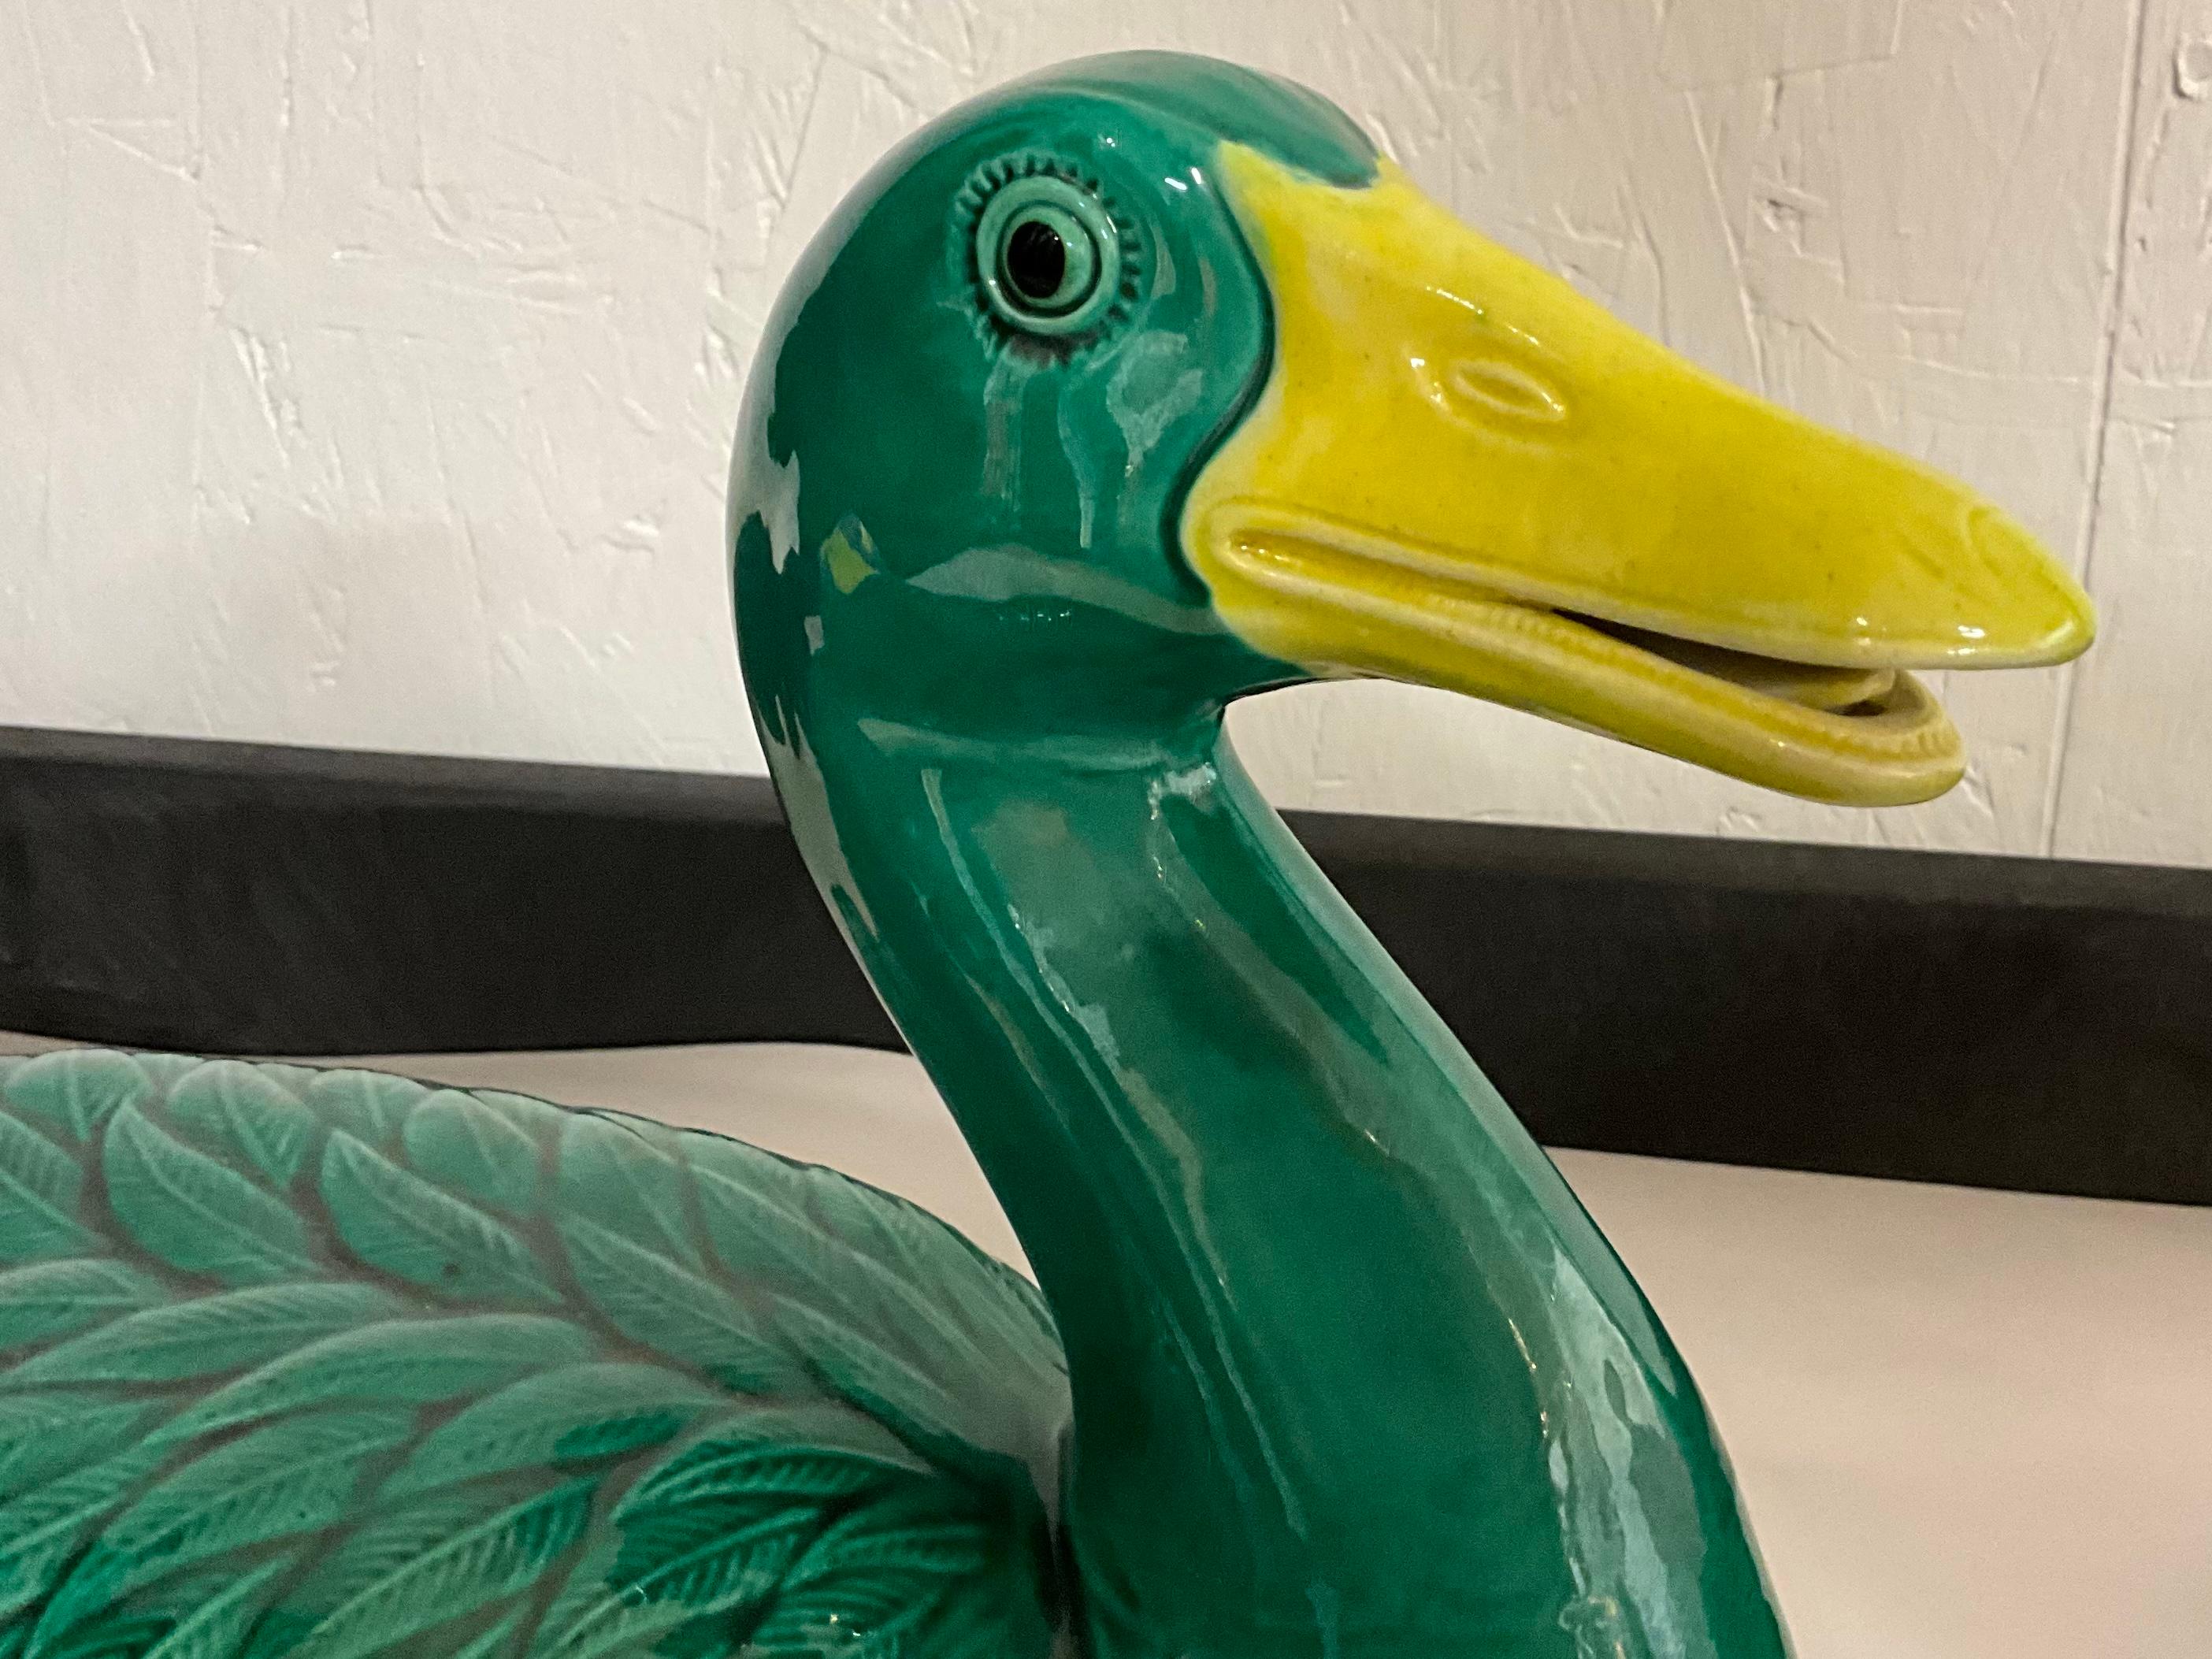 ceramic ducks for sale